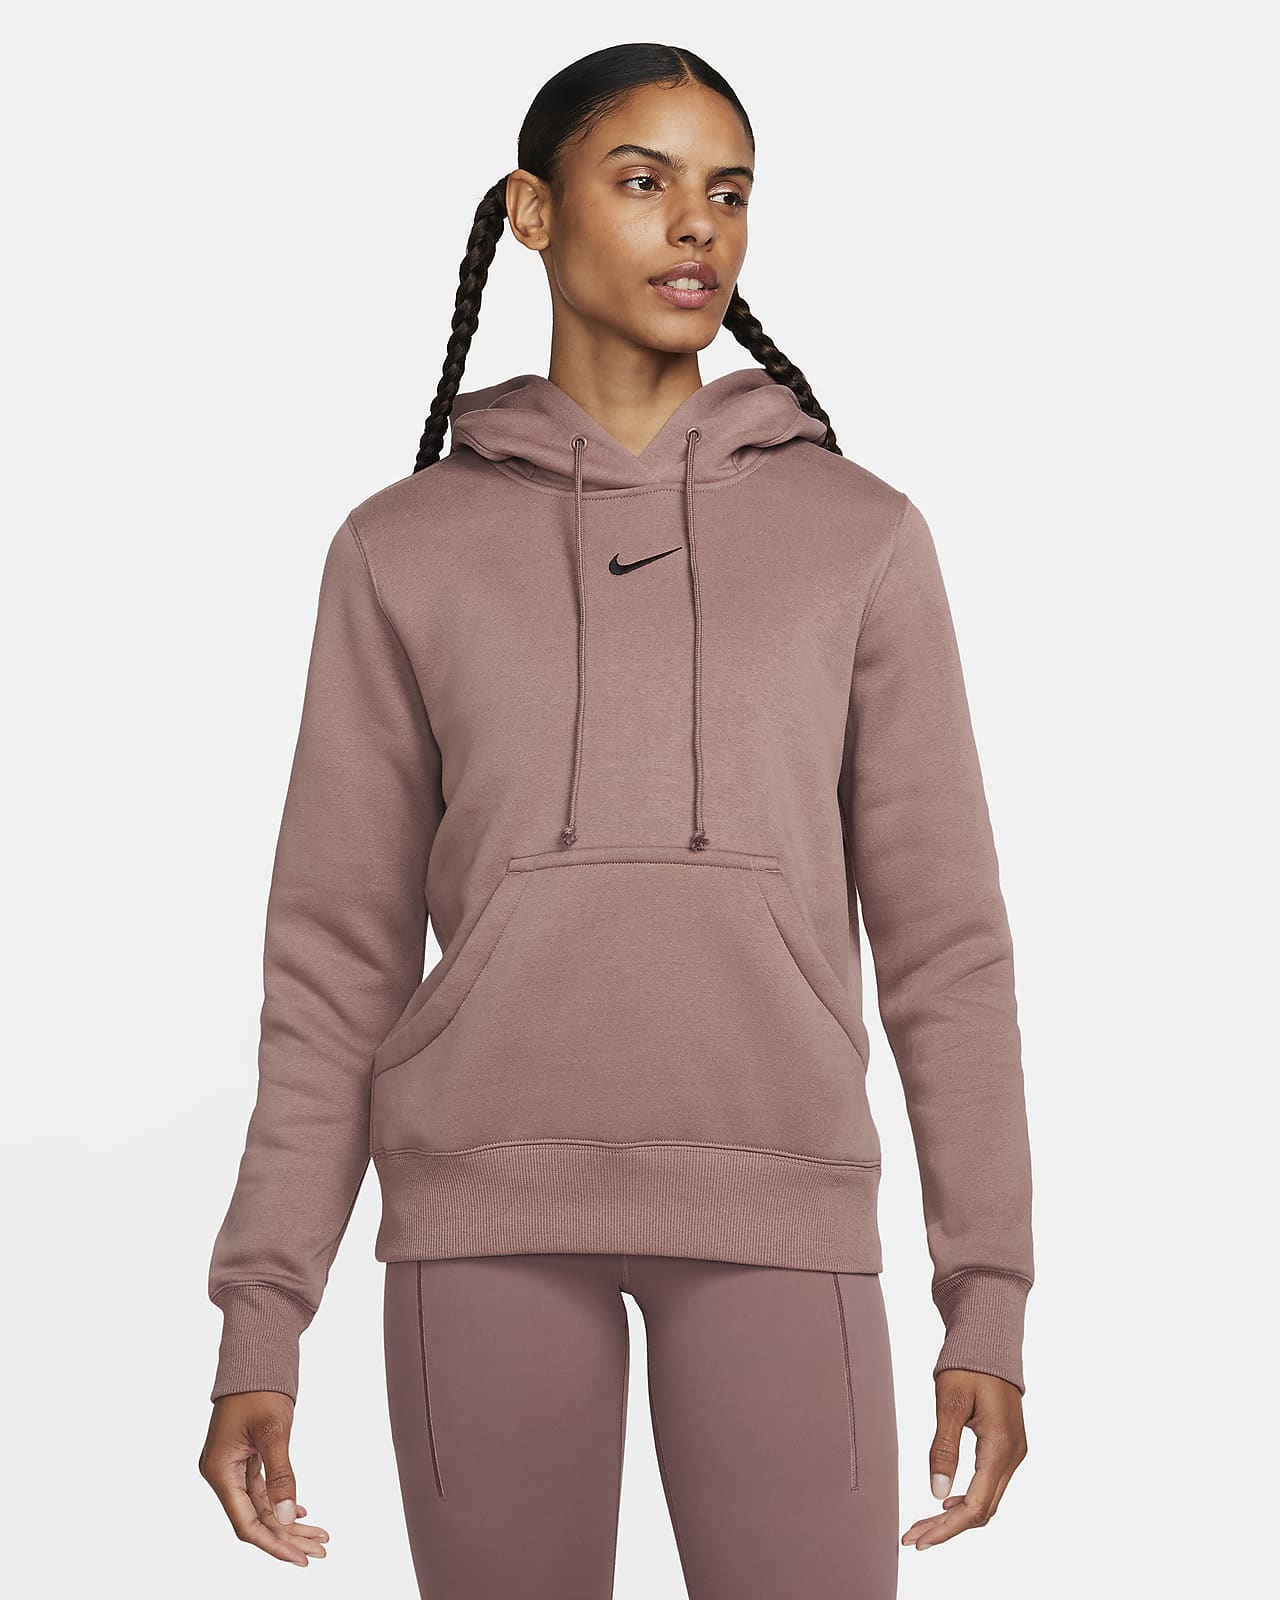 Nike Sportswear Phoenix Fleece Women's Pullover Hoodie. Nike LU